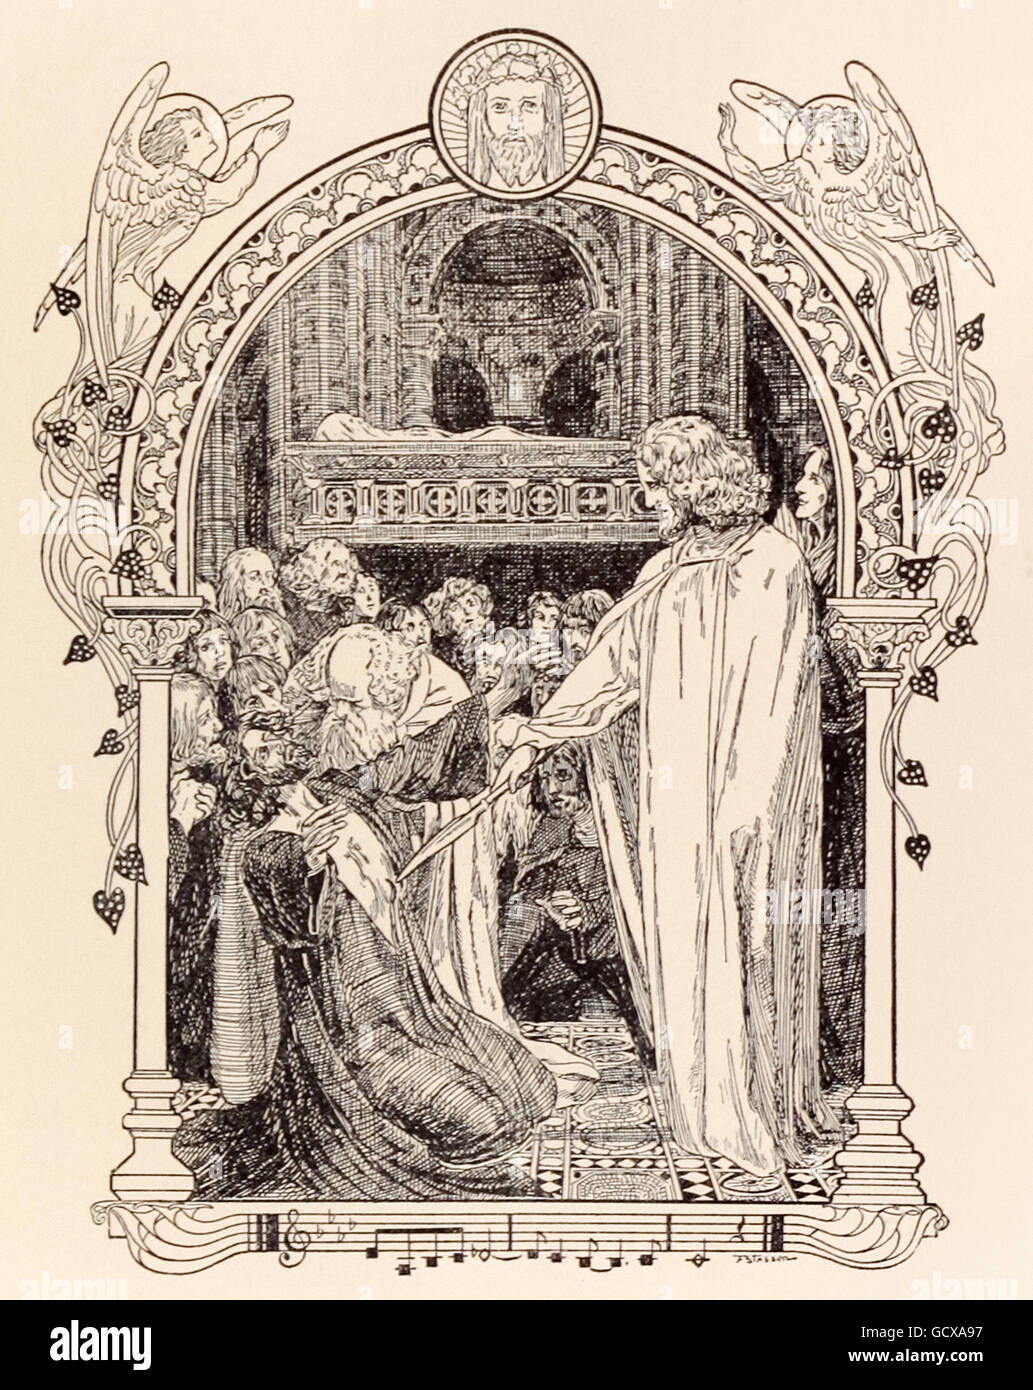 "Parsifal guarigione re Amfortas." Franz Stassen (1869-1949) illustrazione per "Parsifal" di Richard Wagner (1813-1883). Atto 3, nel castello del Graal, Amfortas viene portato davanti al santuario del Santo Graal e guarito. Vedere la descrizione per maggiori informazioni. Foto Stock